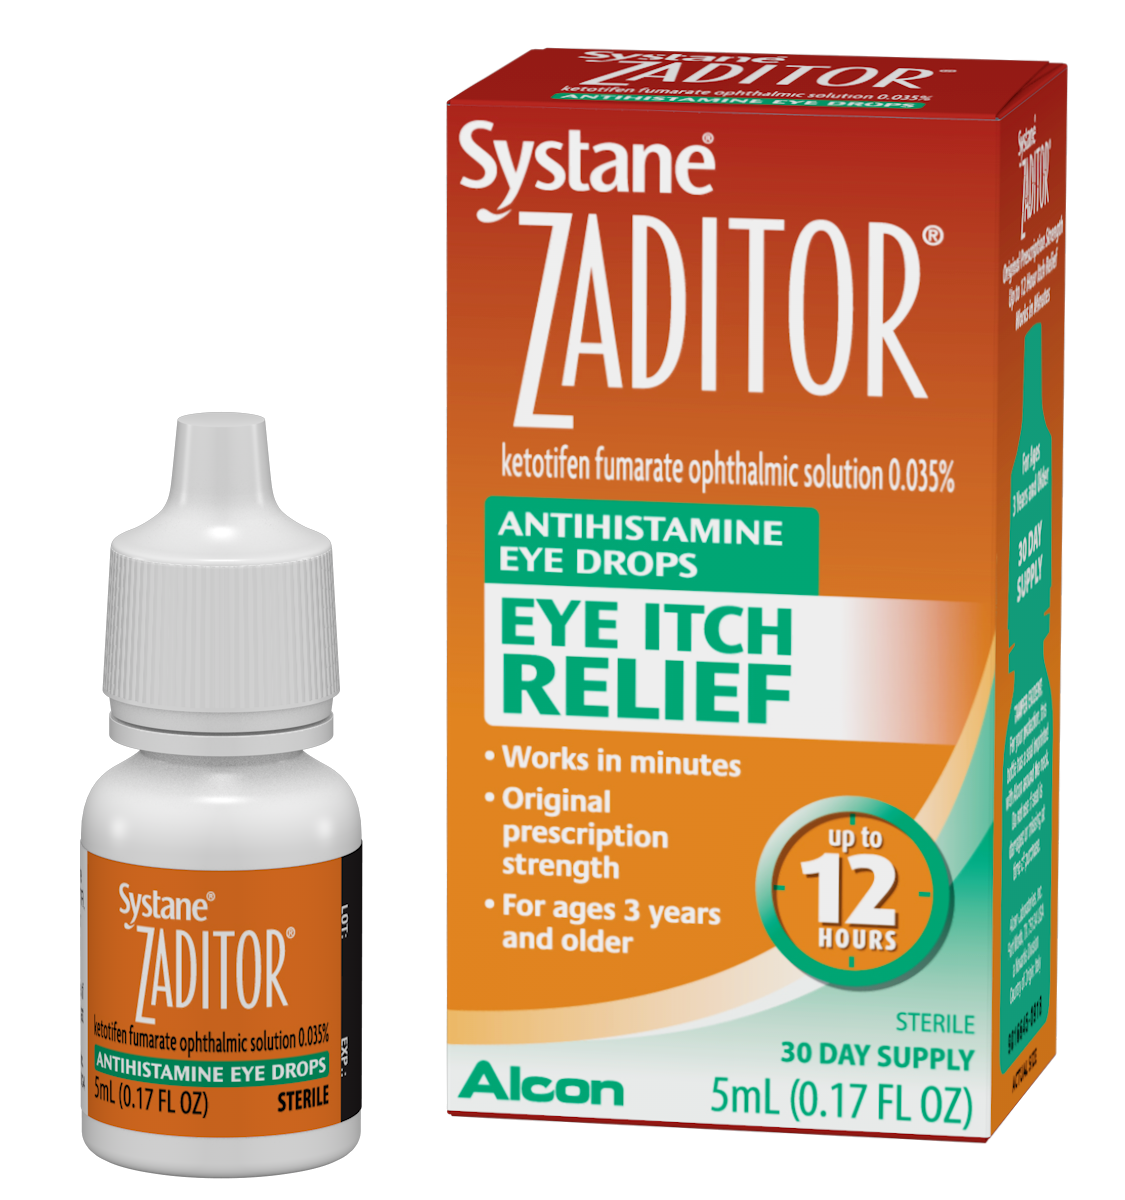 Systane Zaditor Antihistamine Eye Drops